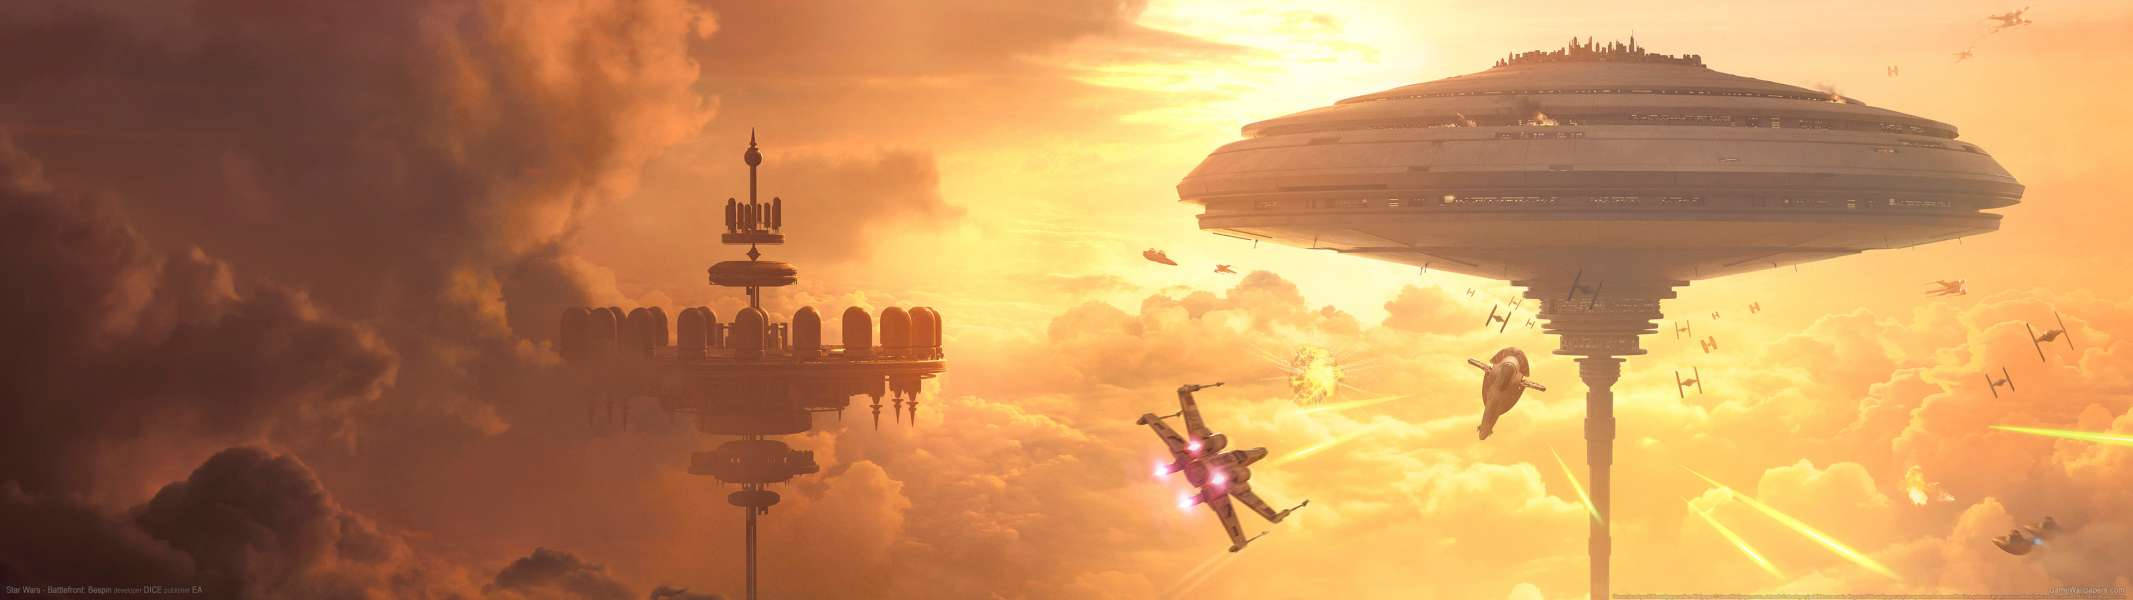 Dual Screen Star Wars Battlefront Bespin Wallpaper